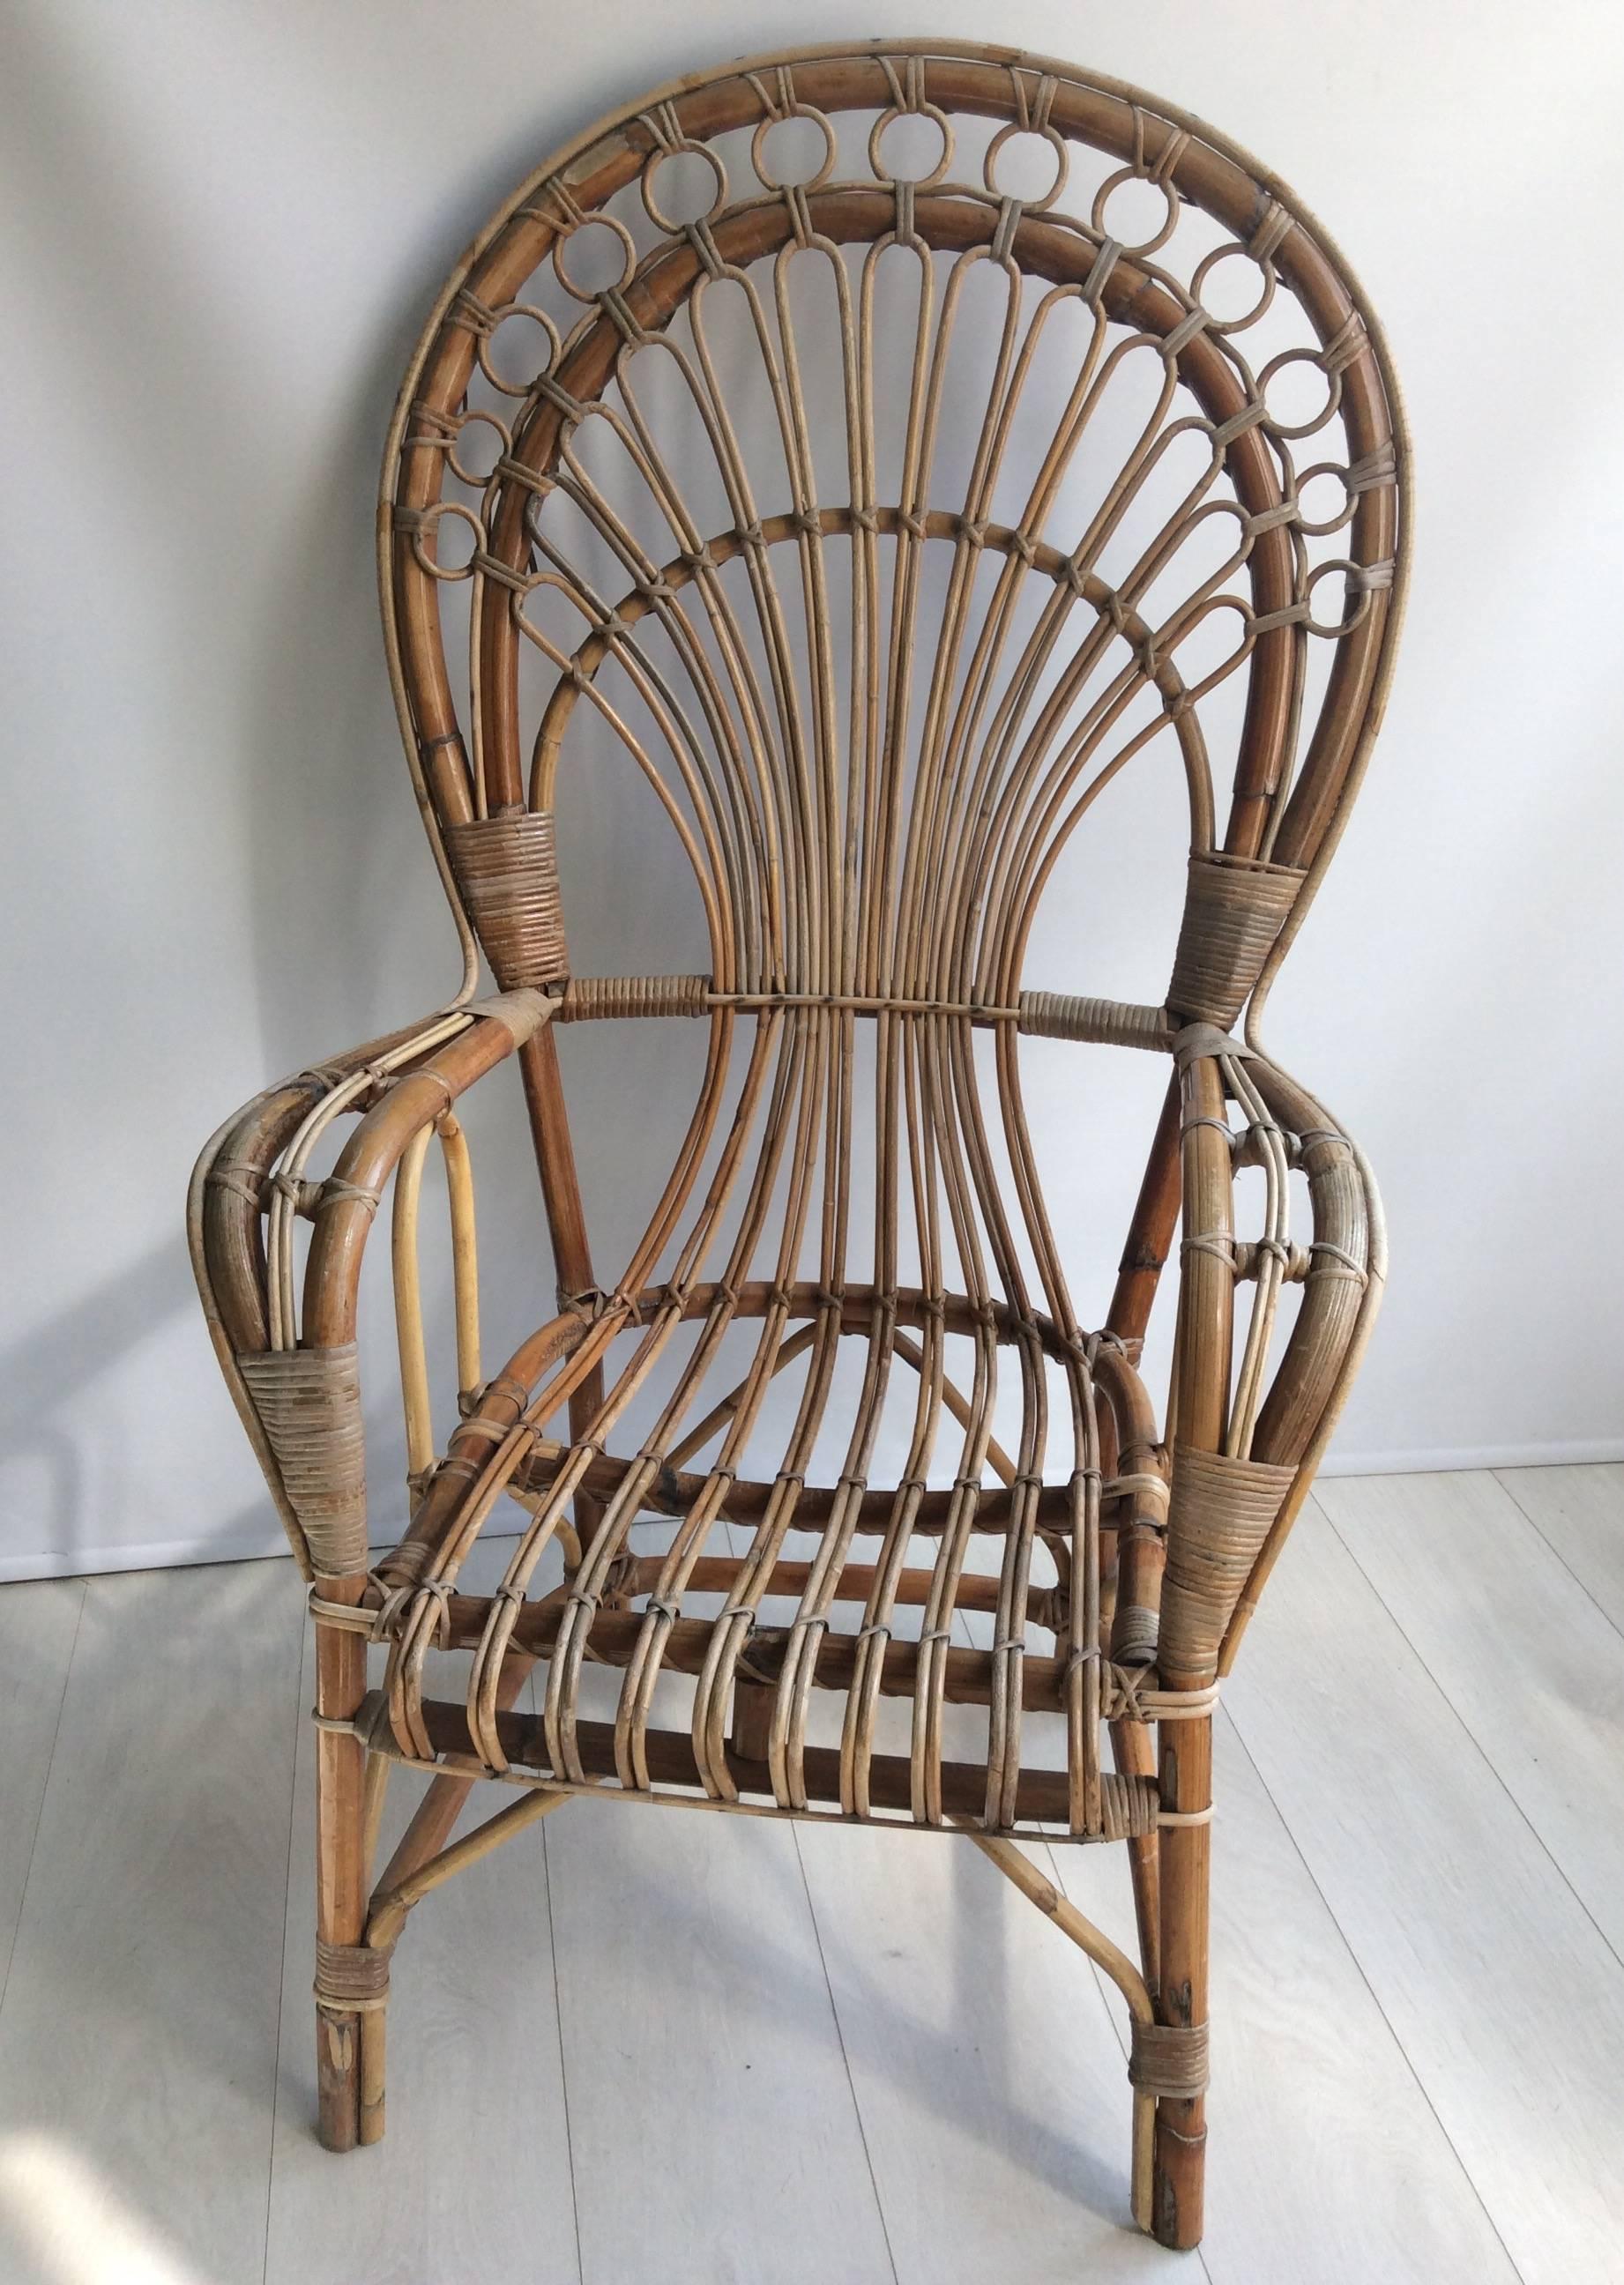 1970s wicker chair